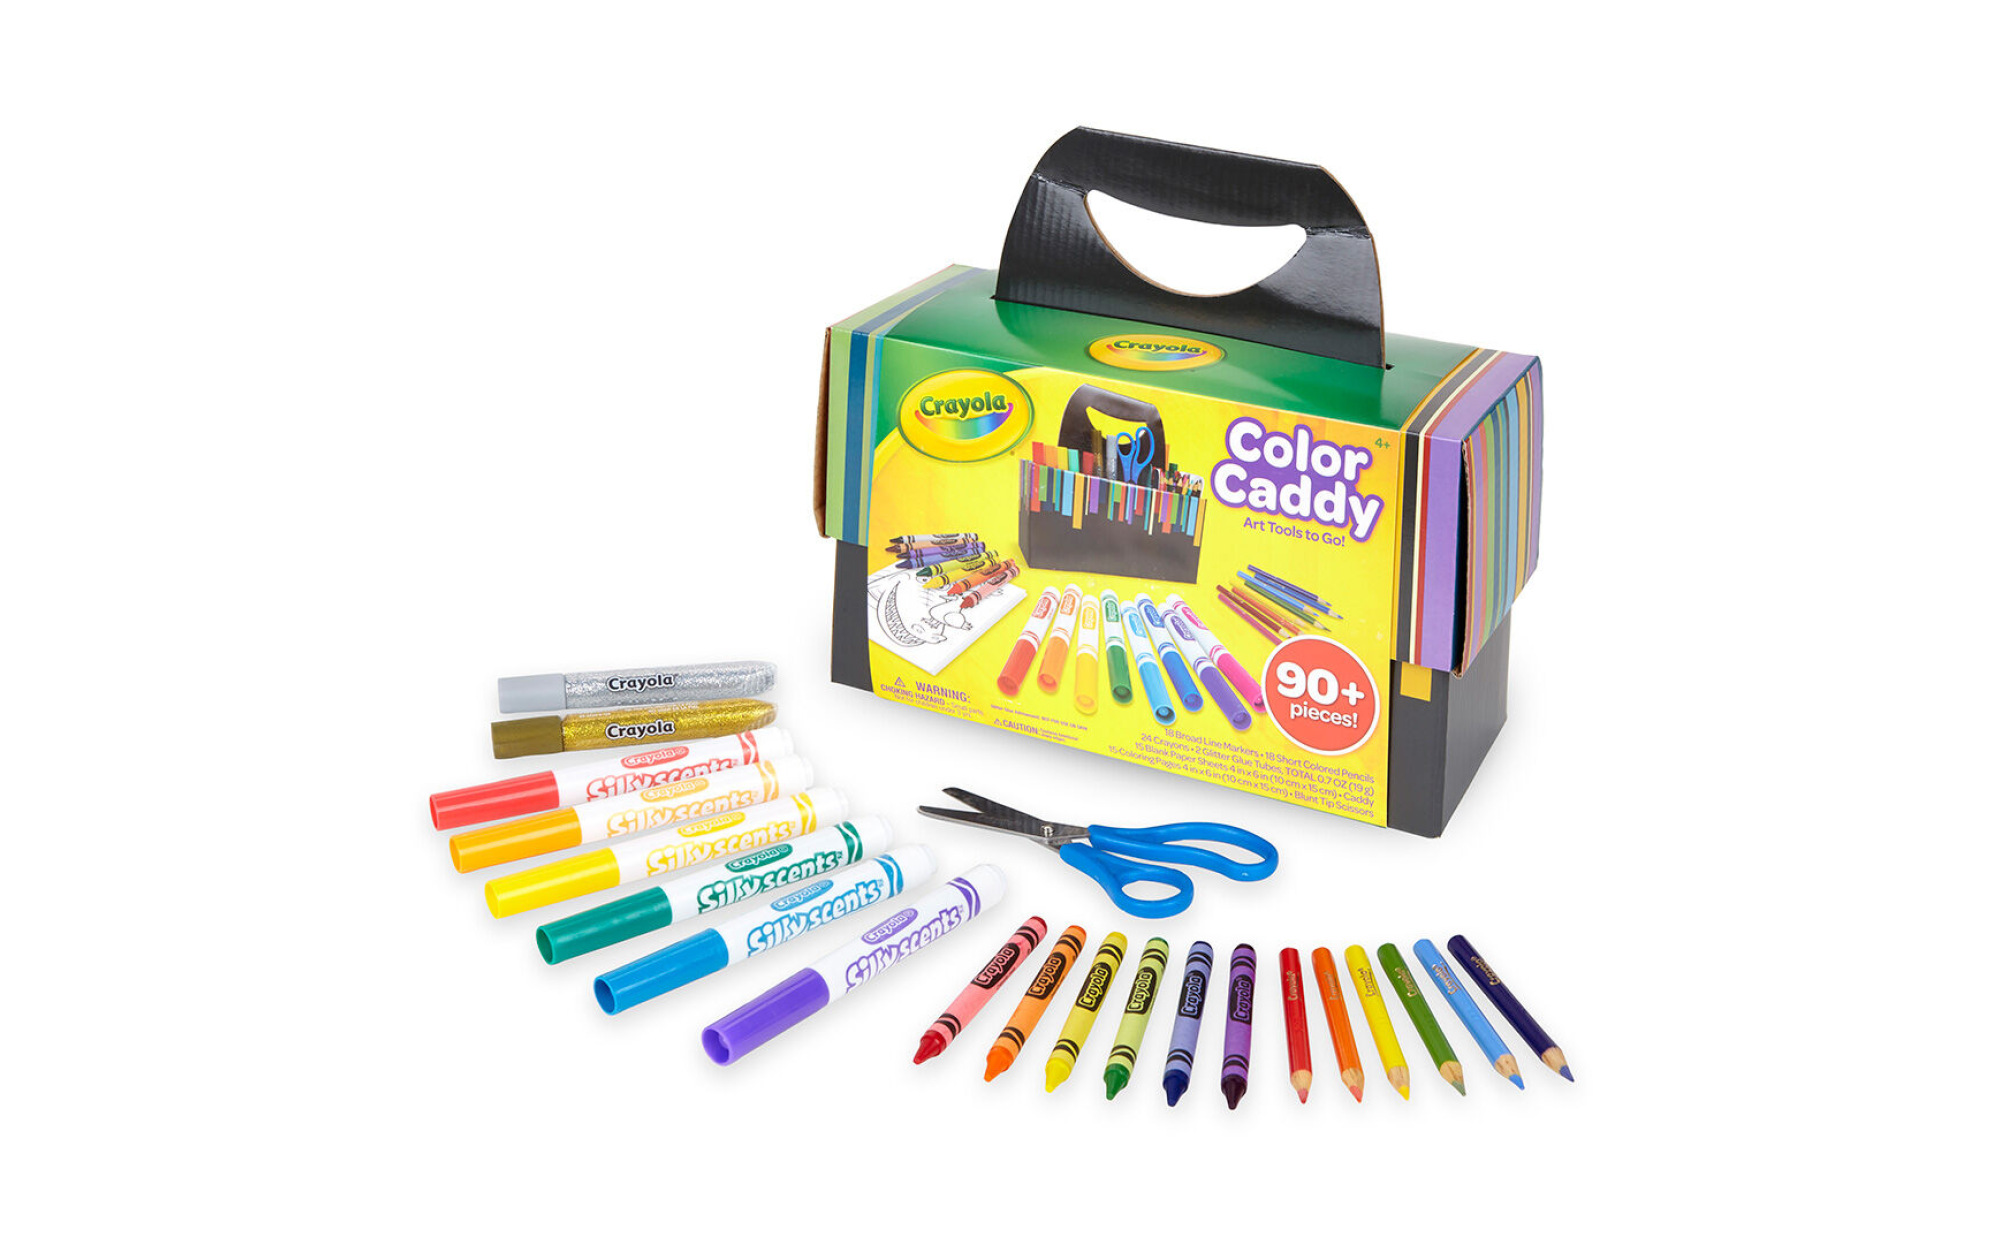 Crayola Inspiration Art Case 140 pieces! Art Supplies Crayons 4+